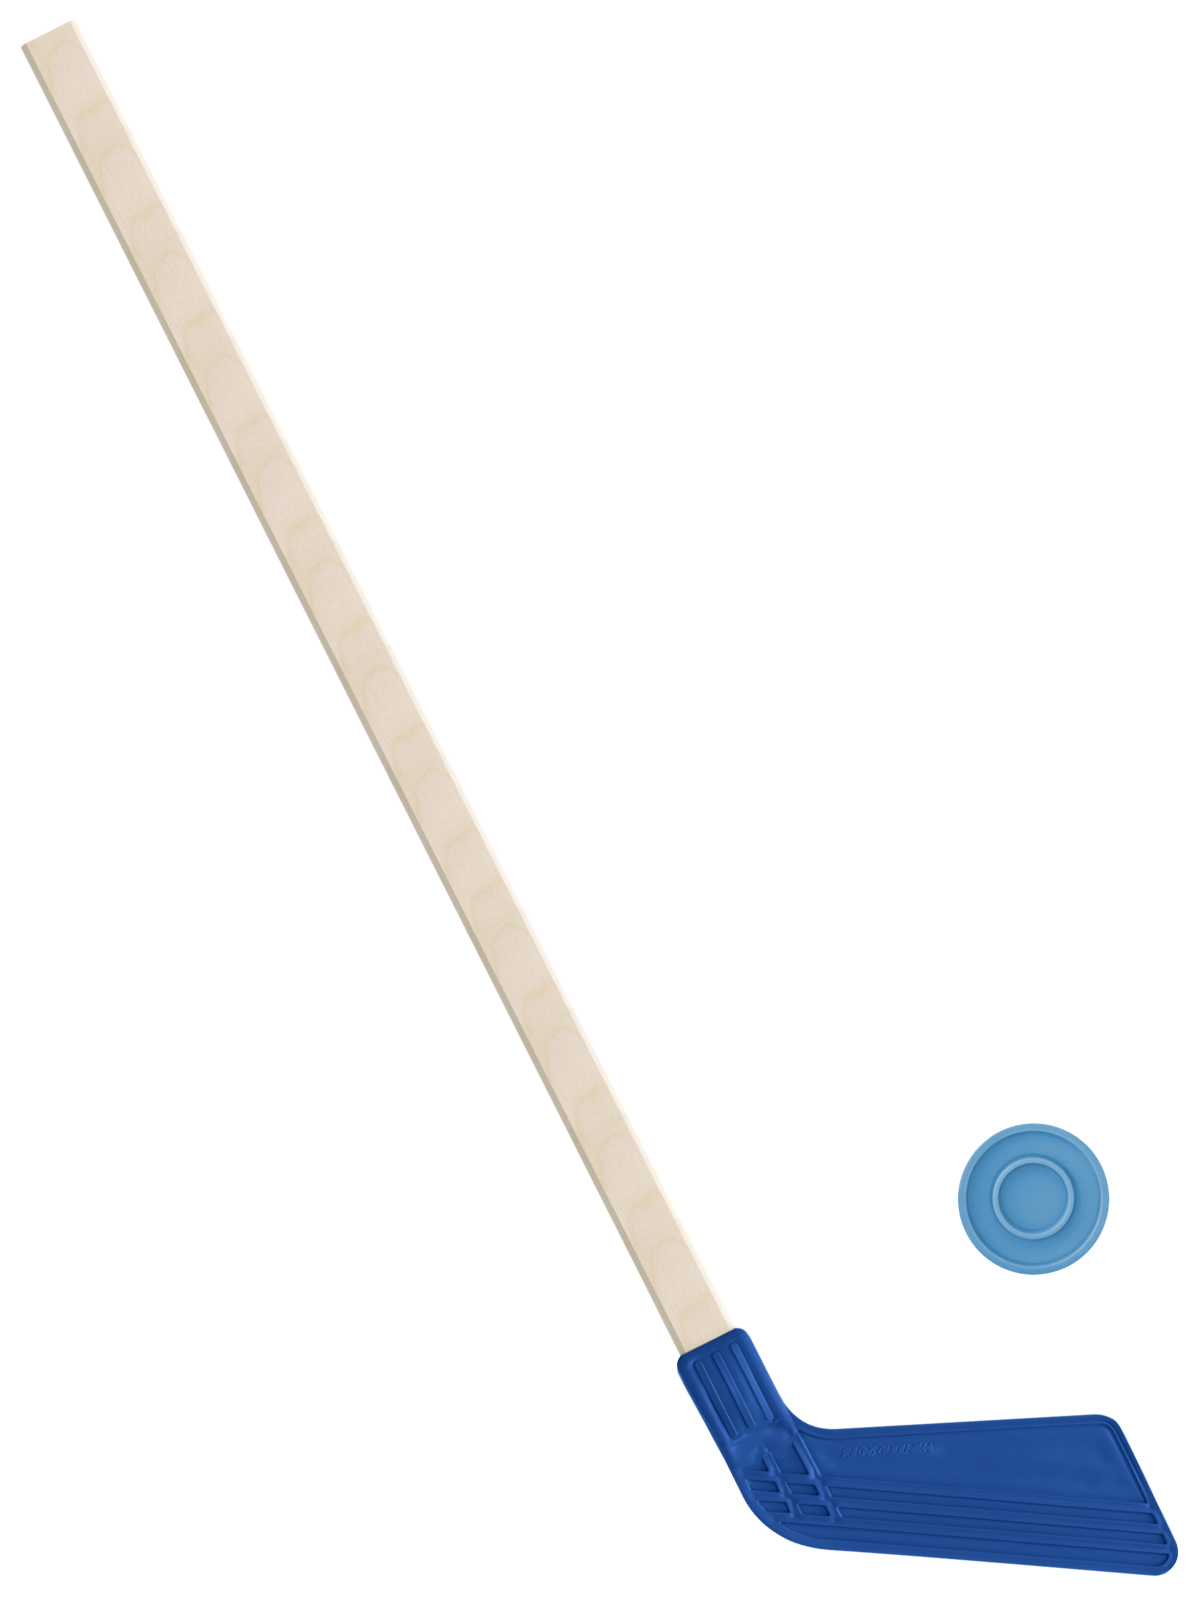 Детский хоккейный набор Задира-плюс, клюшка хоккейная 80 см (синяя)+шайба